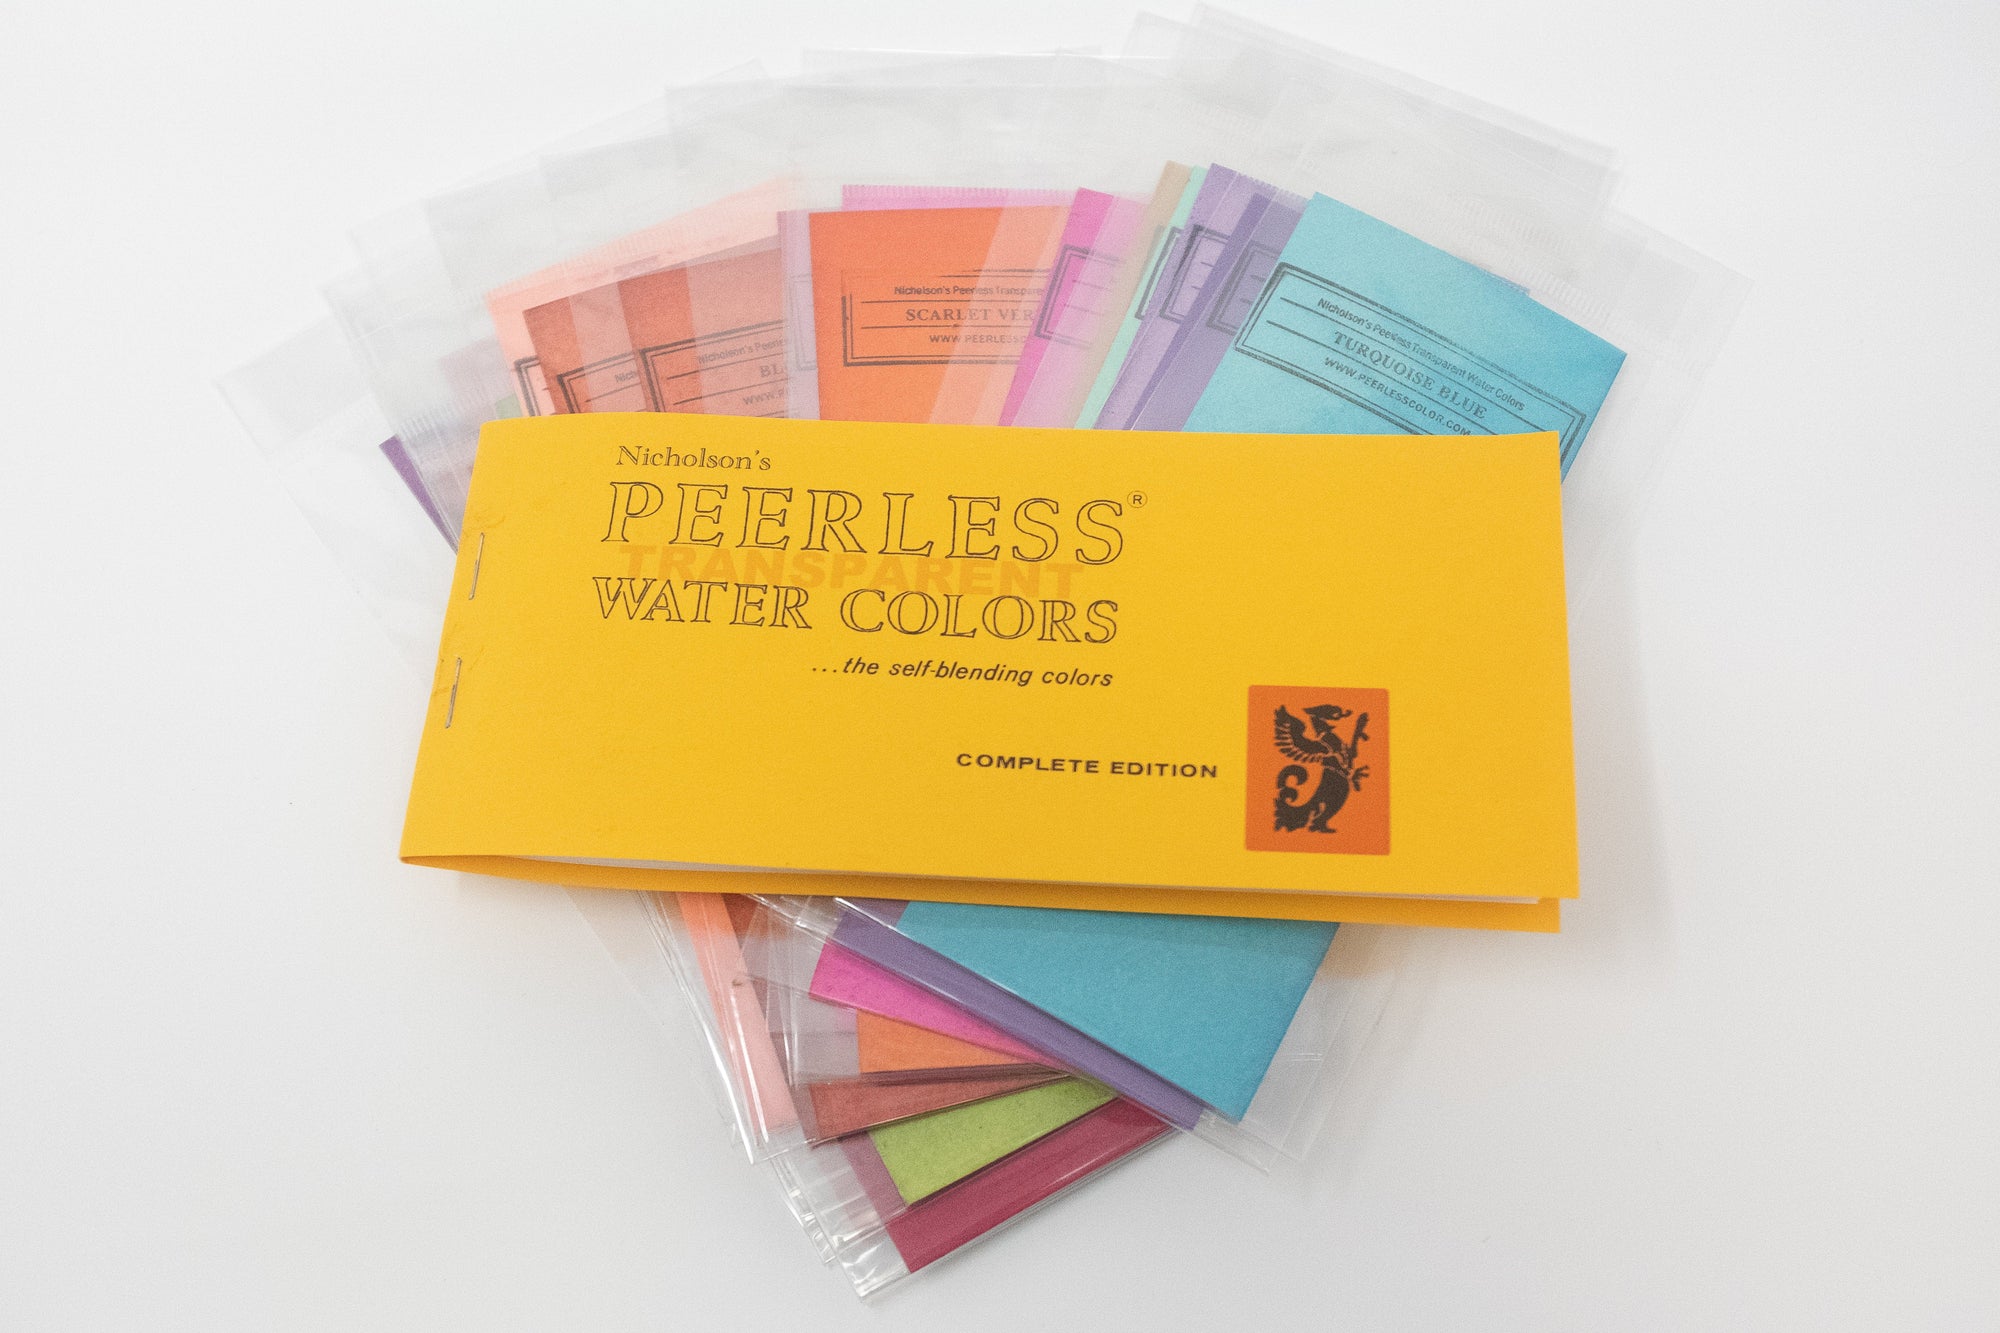 Nicholson's Peerless Watercolors Color Swatch & Derwent Inktense